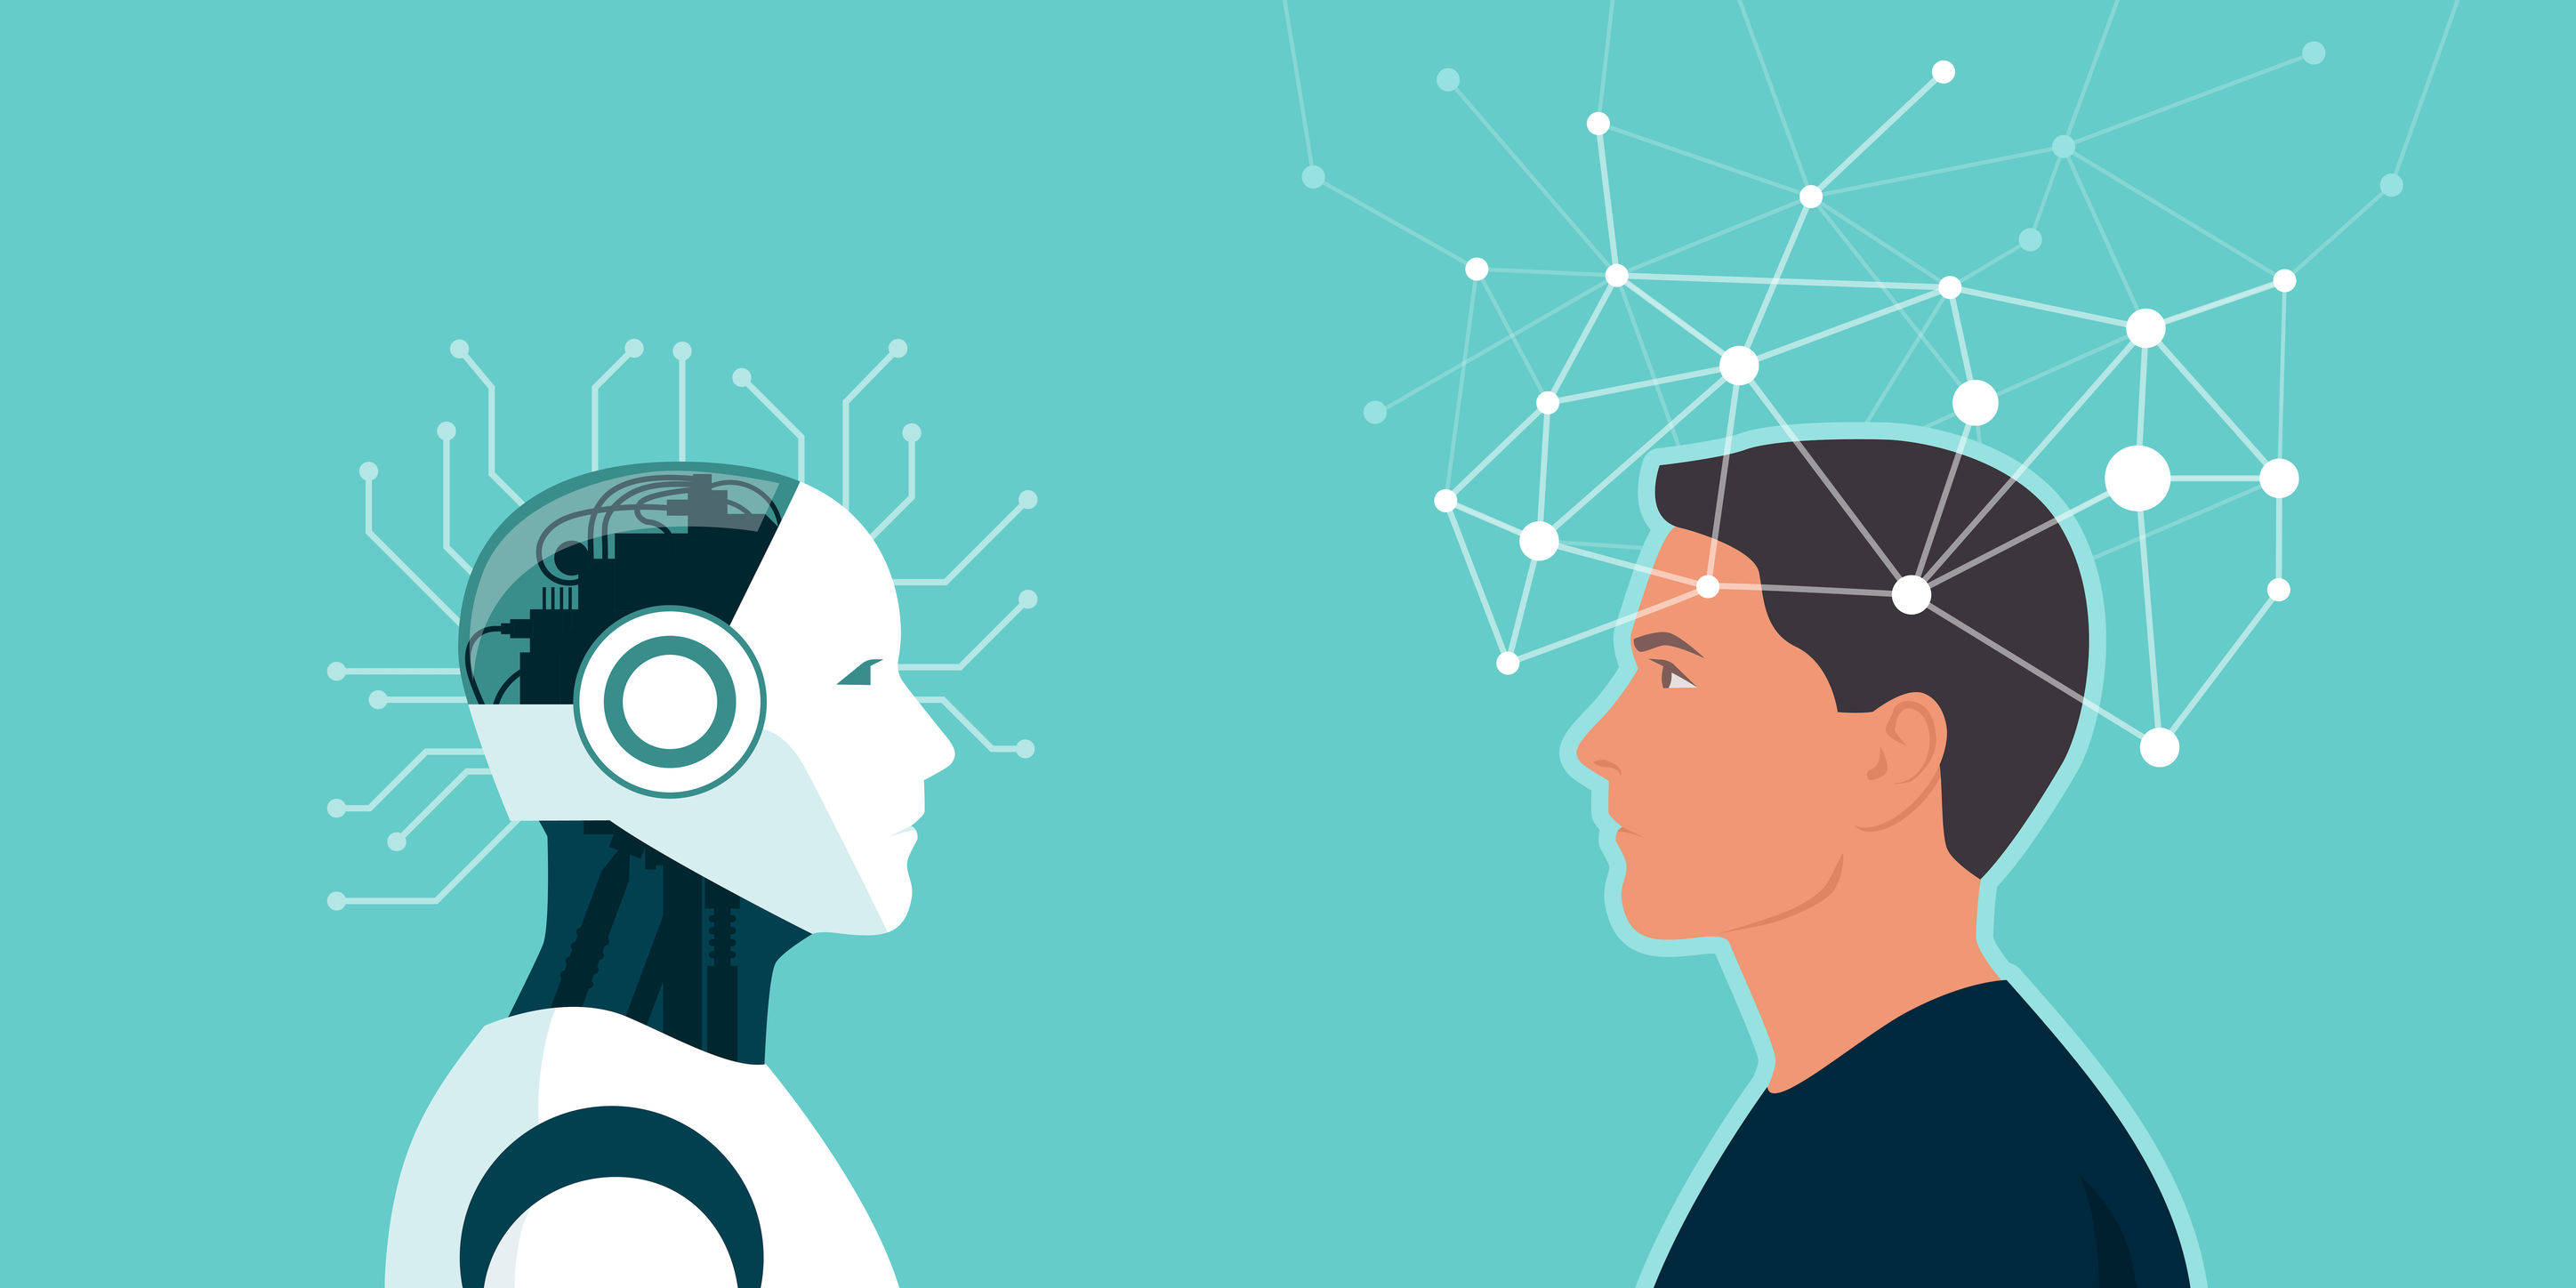 Academic versus AI